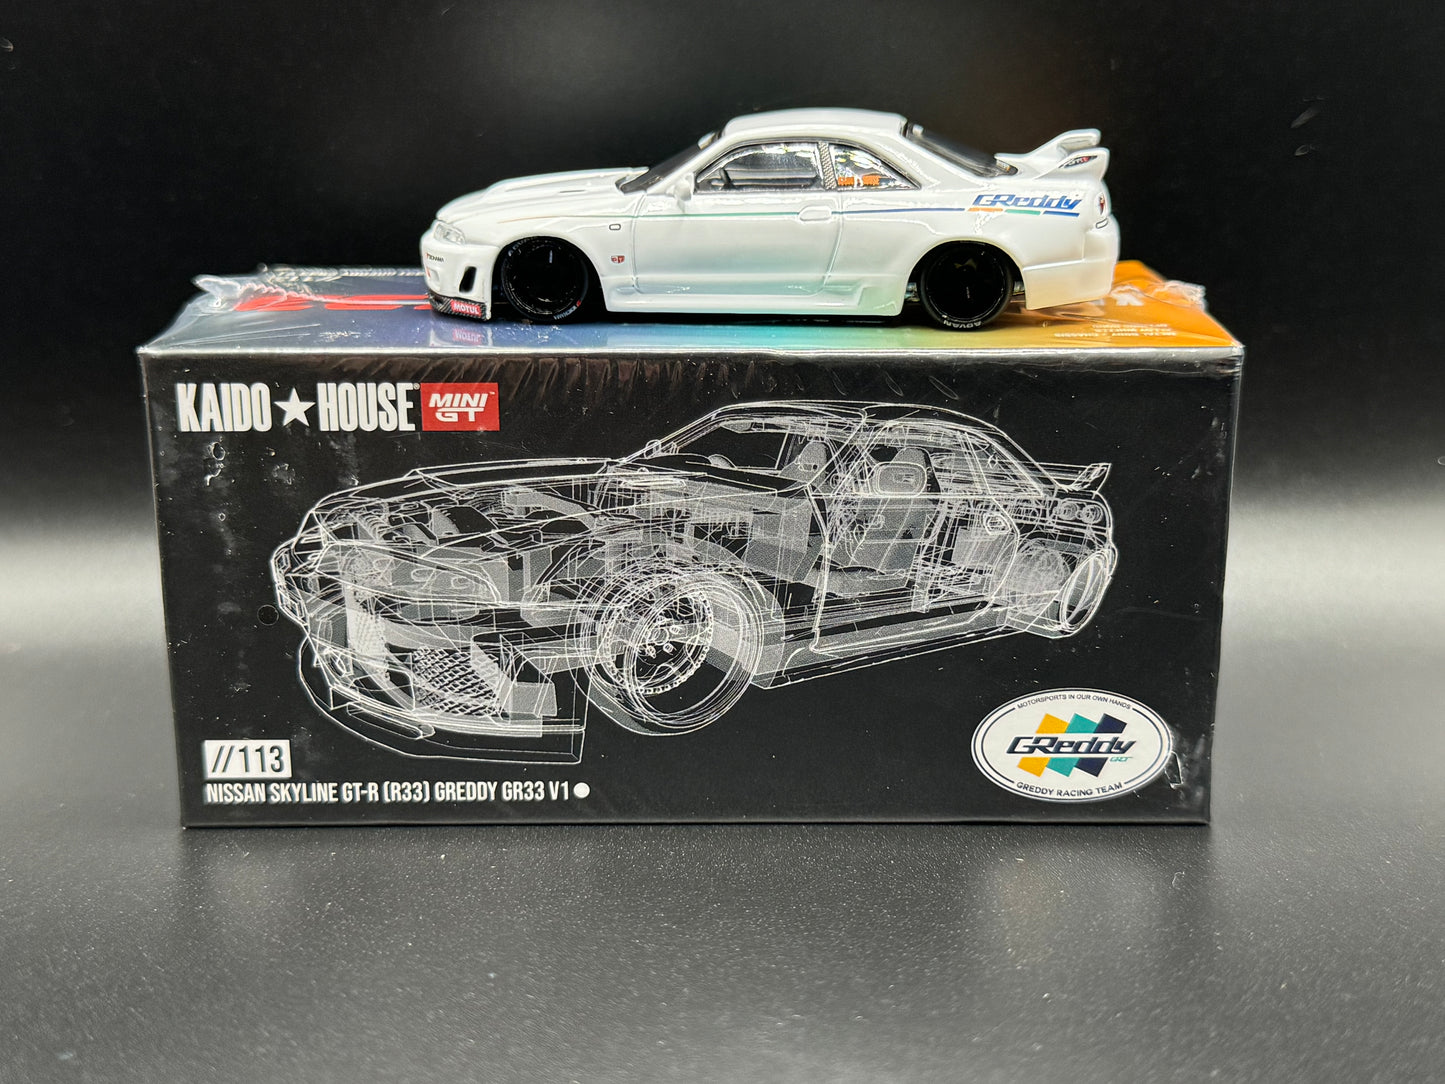 Kaido House x Mini GT Nissan Skyline GT-R (R33) Greddy GR33 V1 White KHMG113